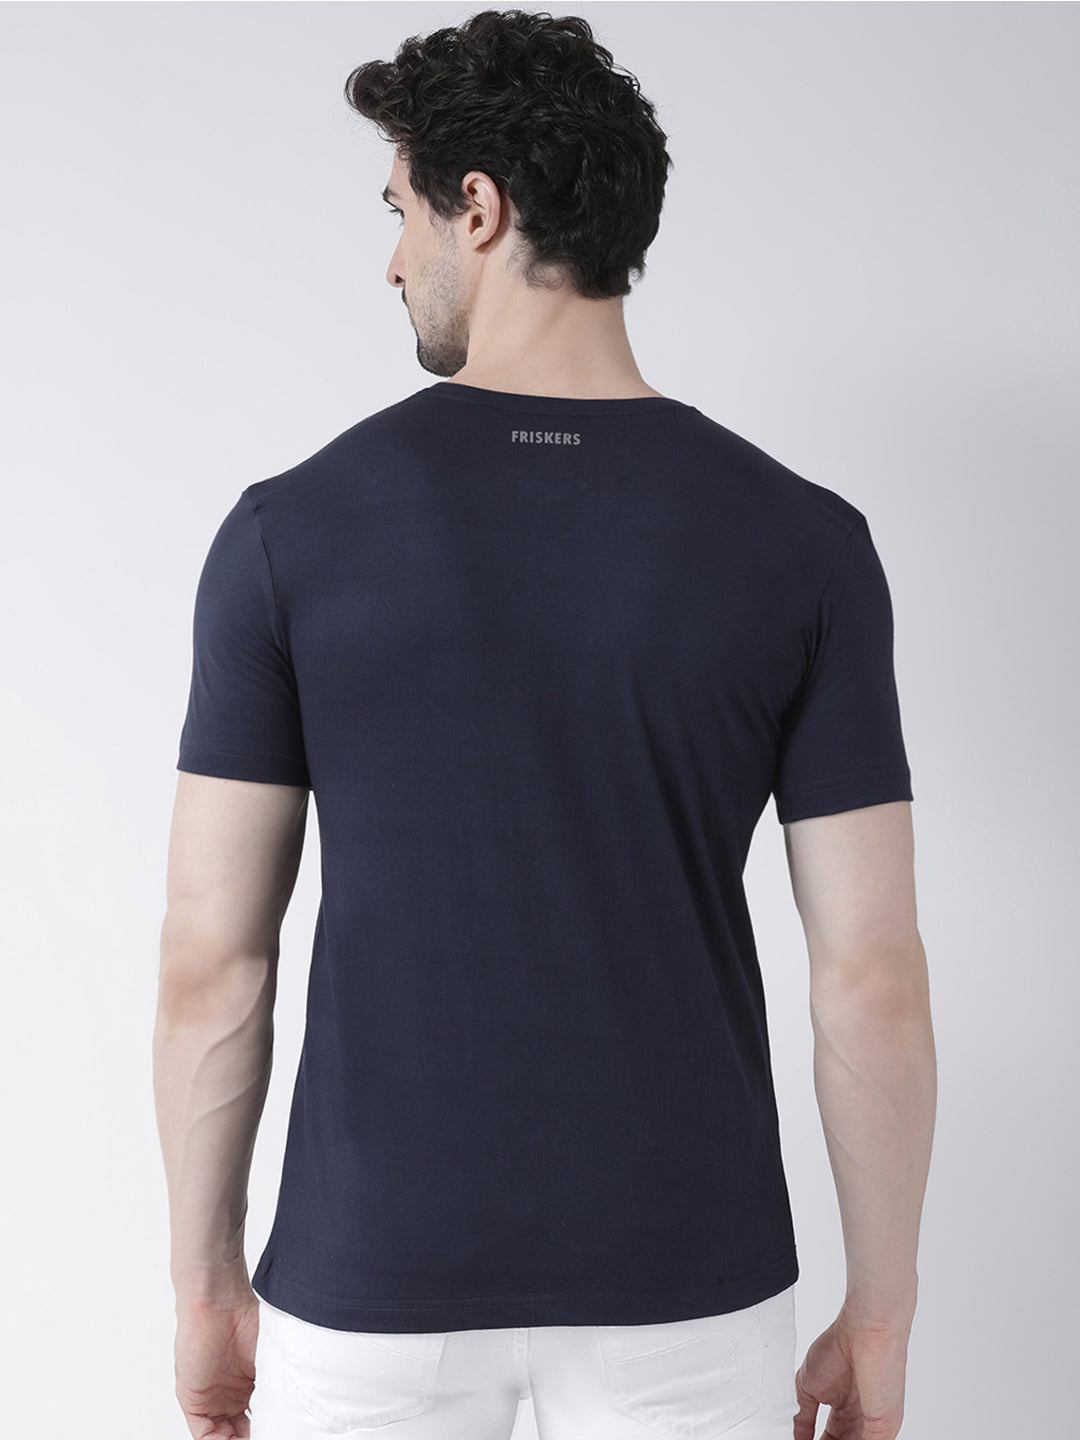 Men's Lets Rock printed Pure Cotton Training T-Shirt - Friskers